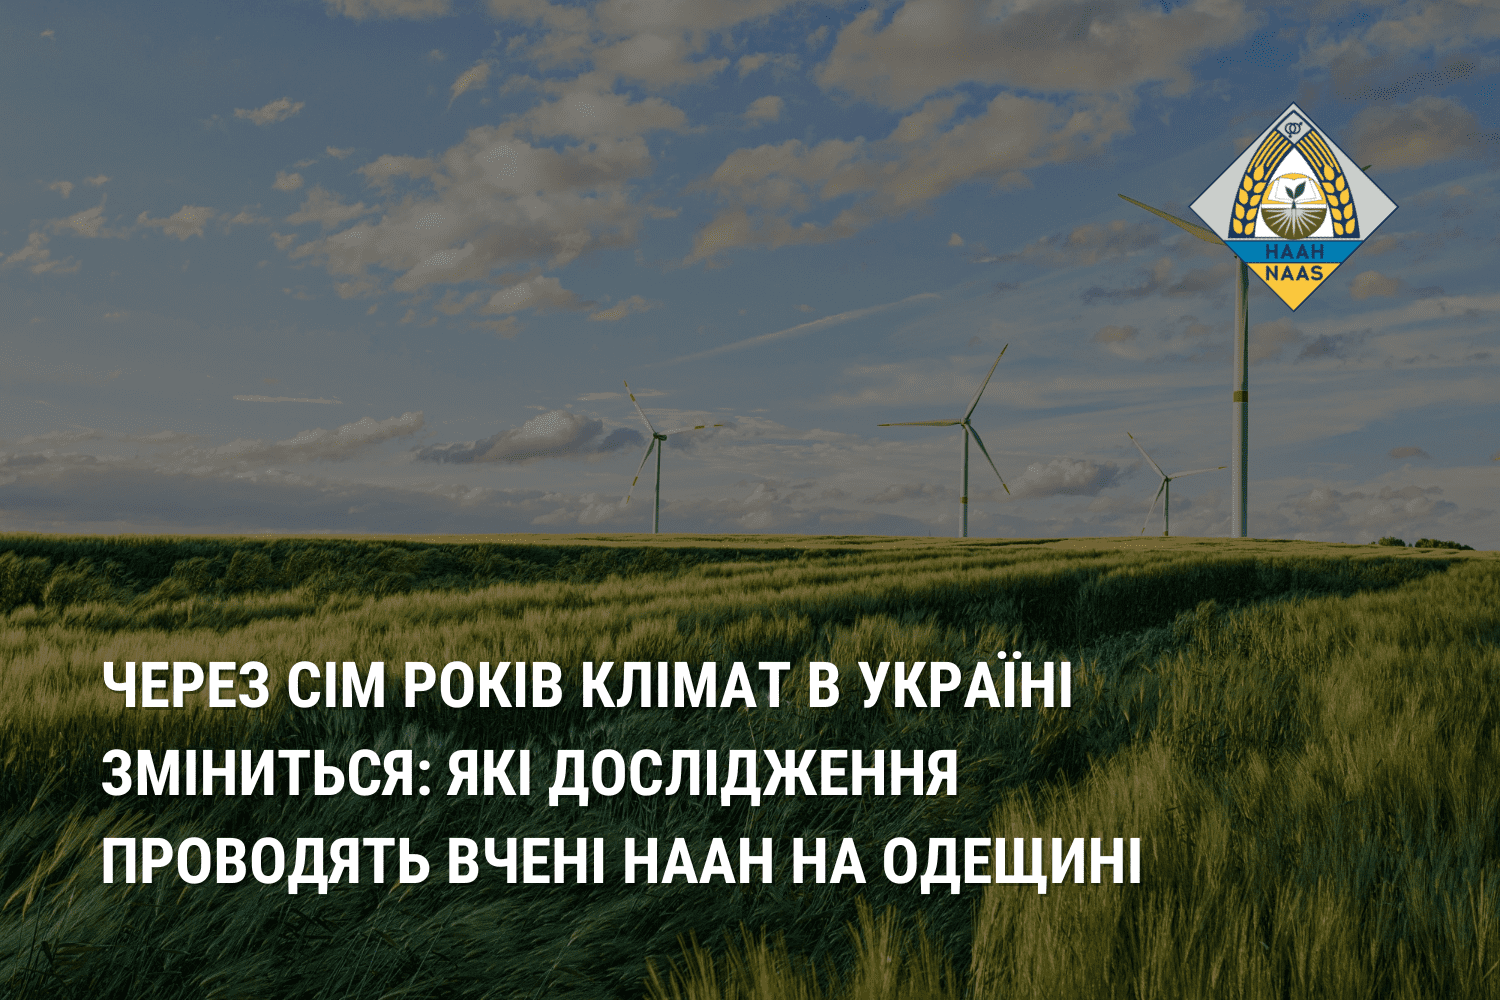 Через сім років клімат в Україні зміниться: які дослідження проводять вчені НААН на Одещині